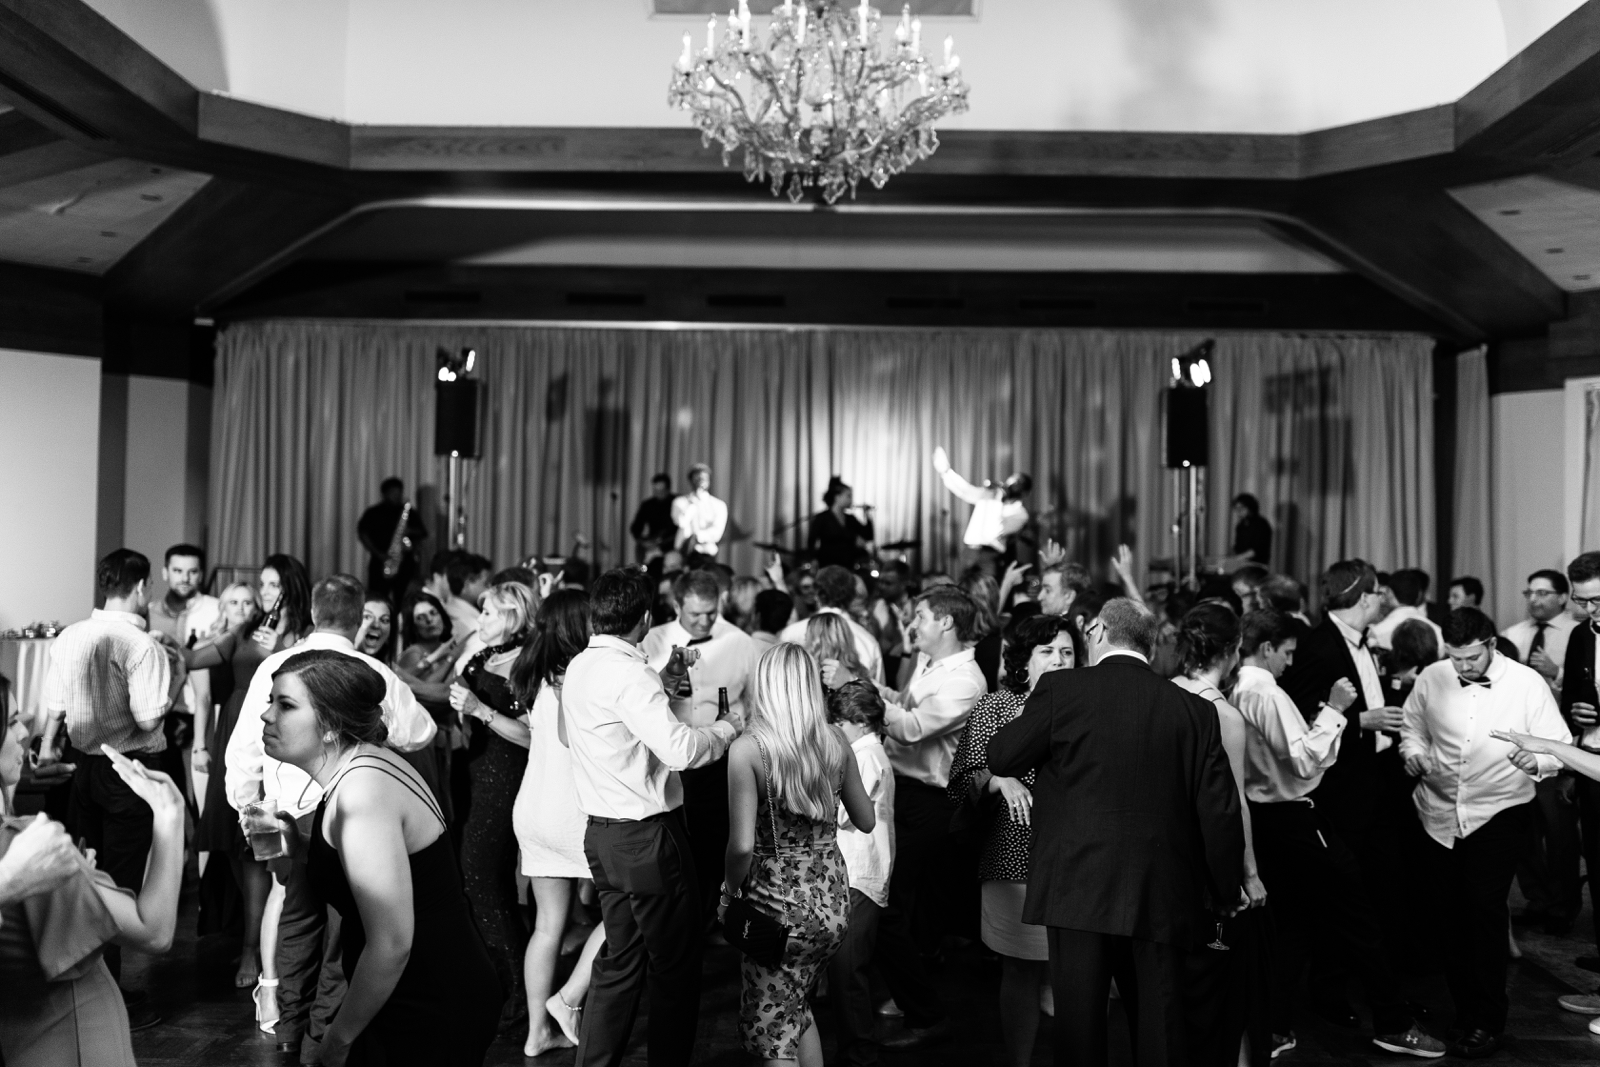 The Club Birmingham Wedding - Syd & Lex Photography